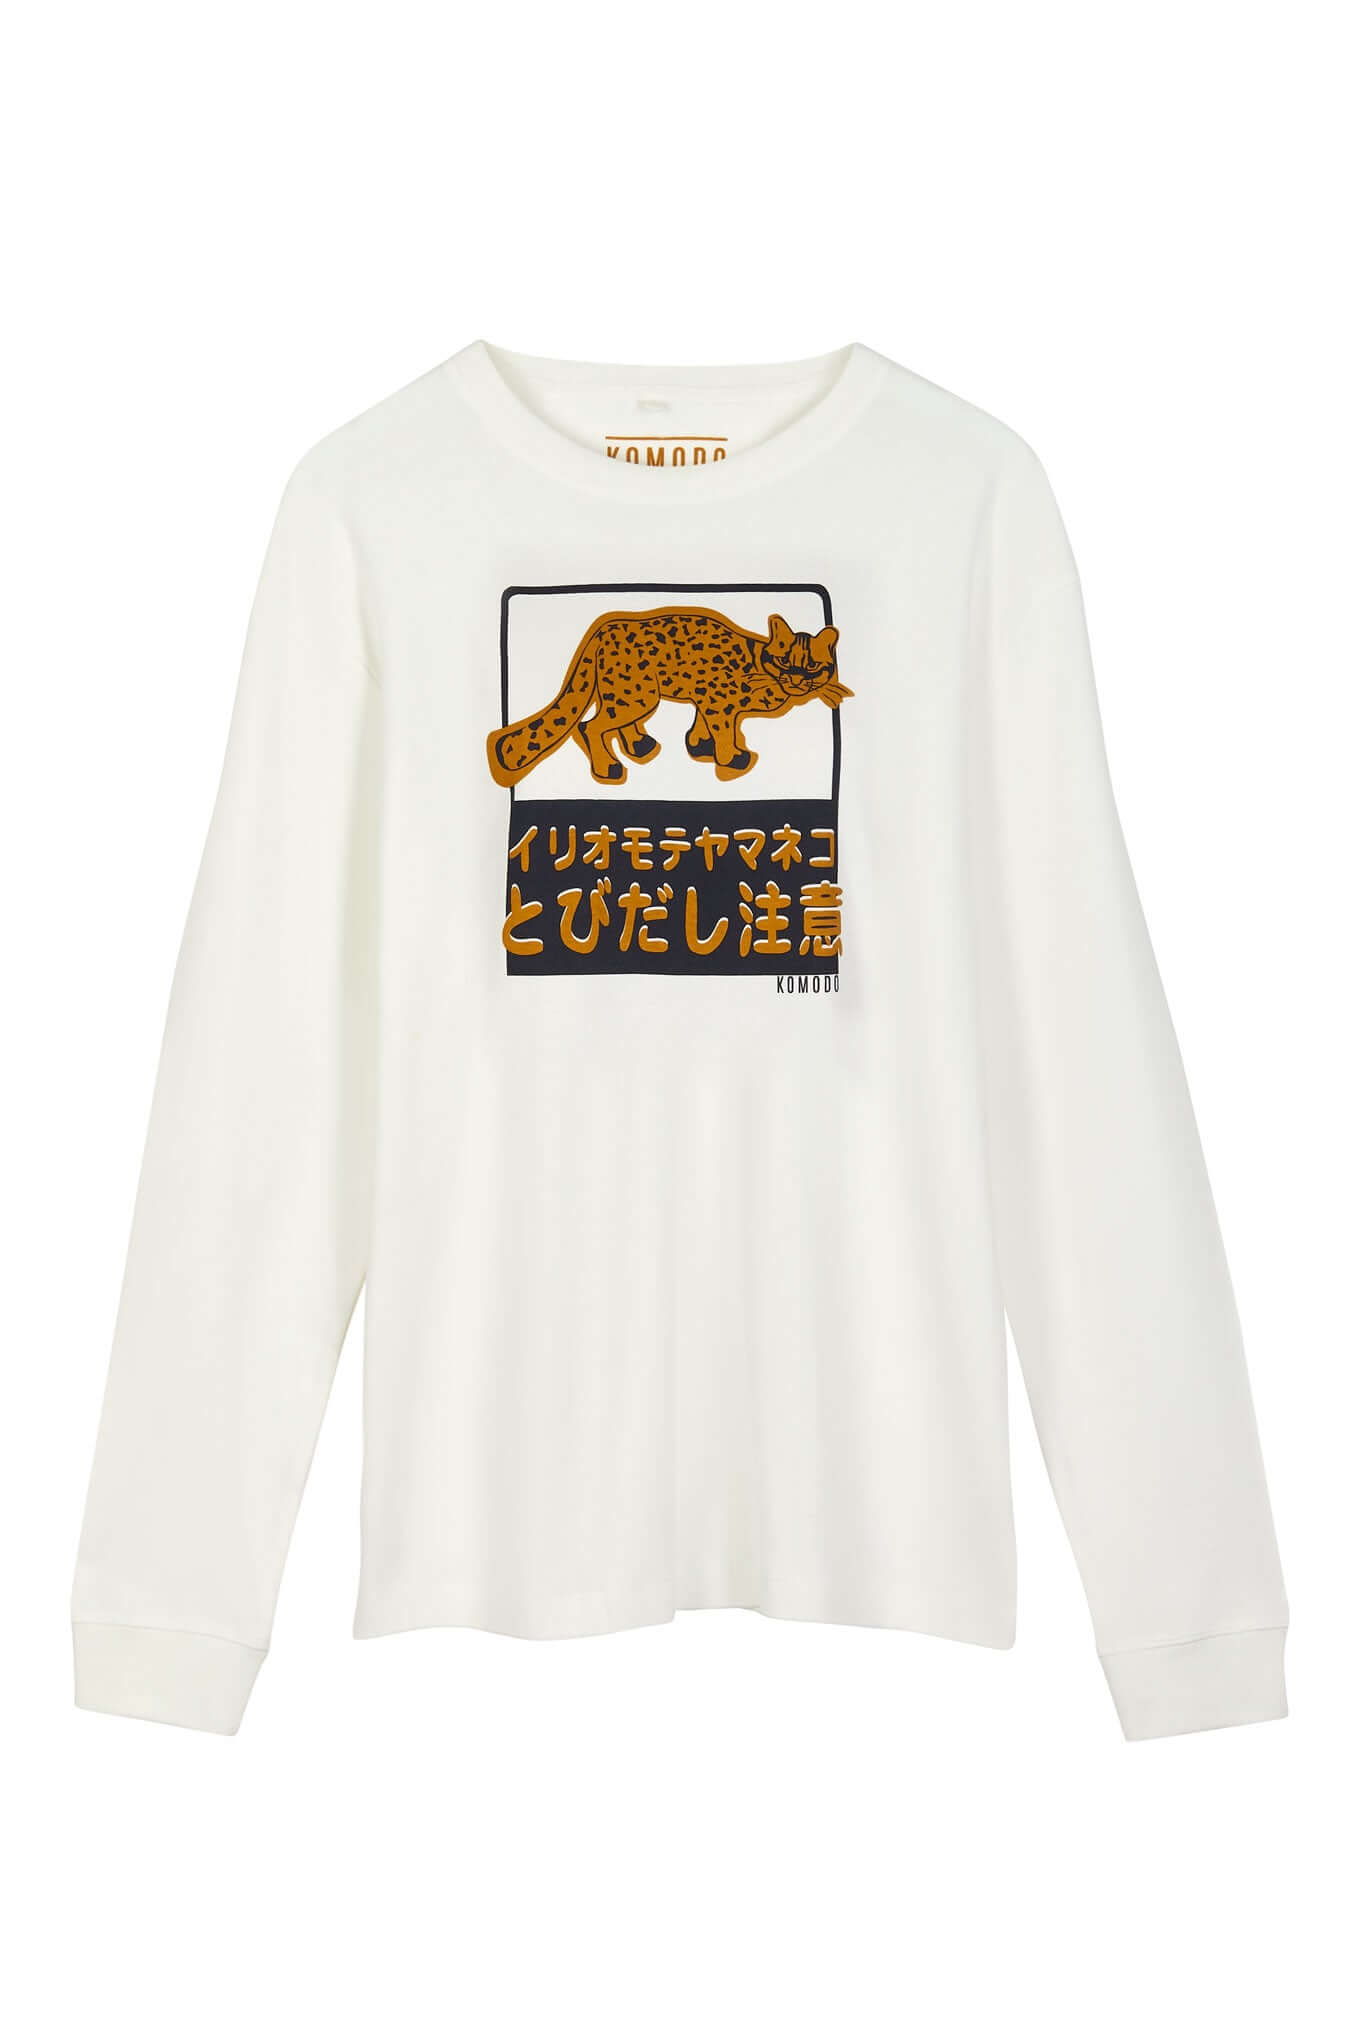 Weisses, langärmeliges T-Shirt HAKON IRIOMOTE CAT aus 100% Bio-Baumwolle von Komodo